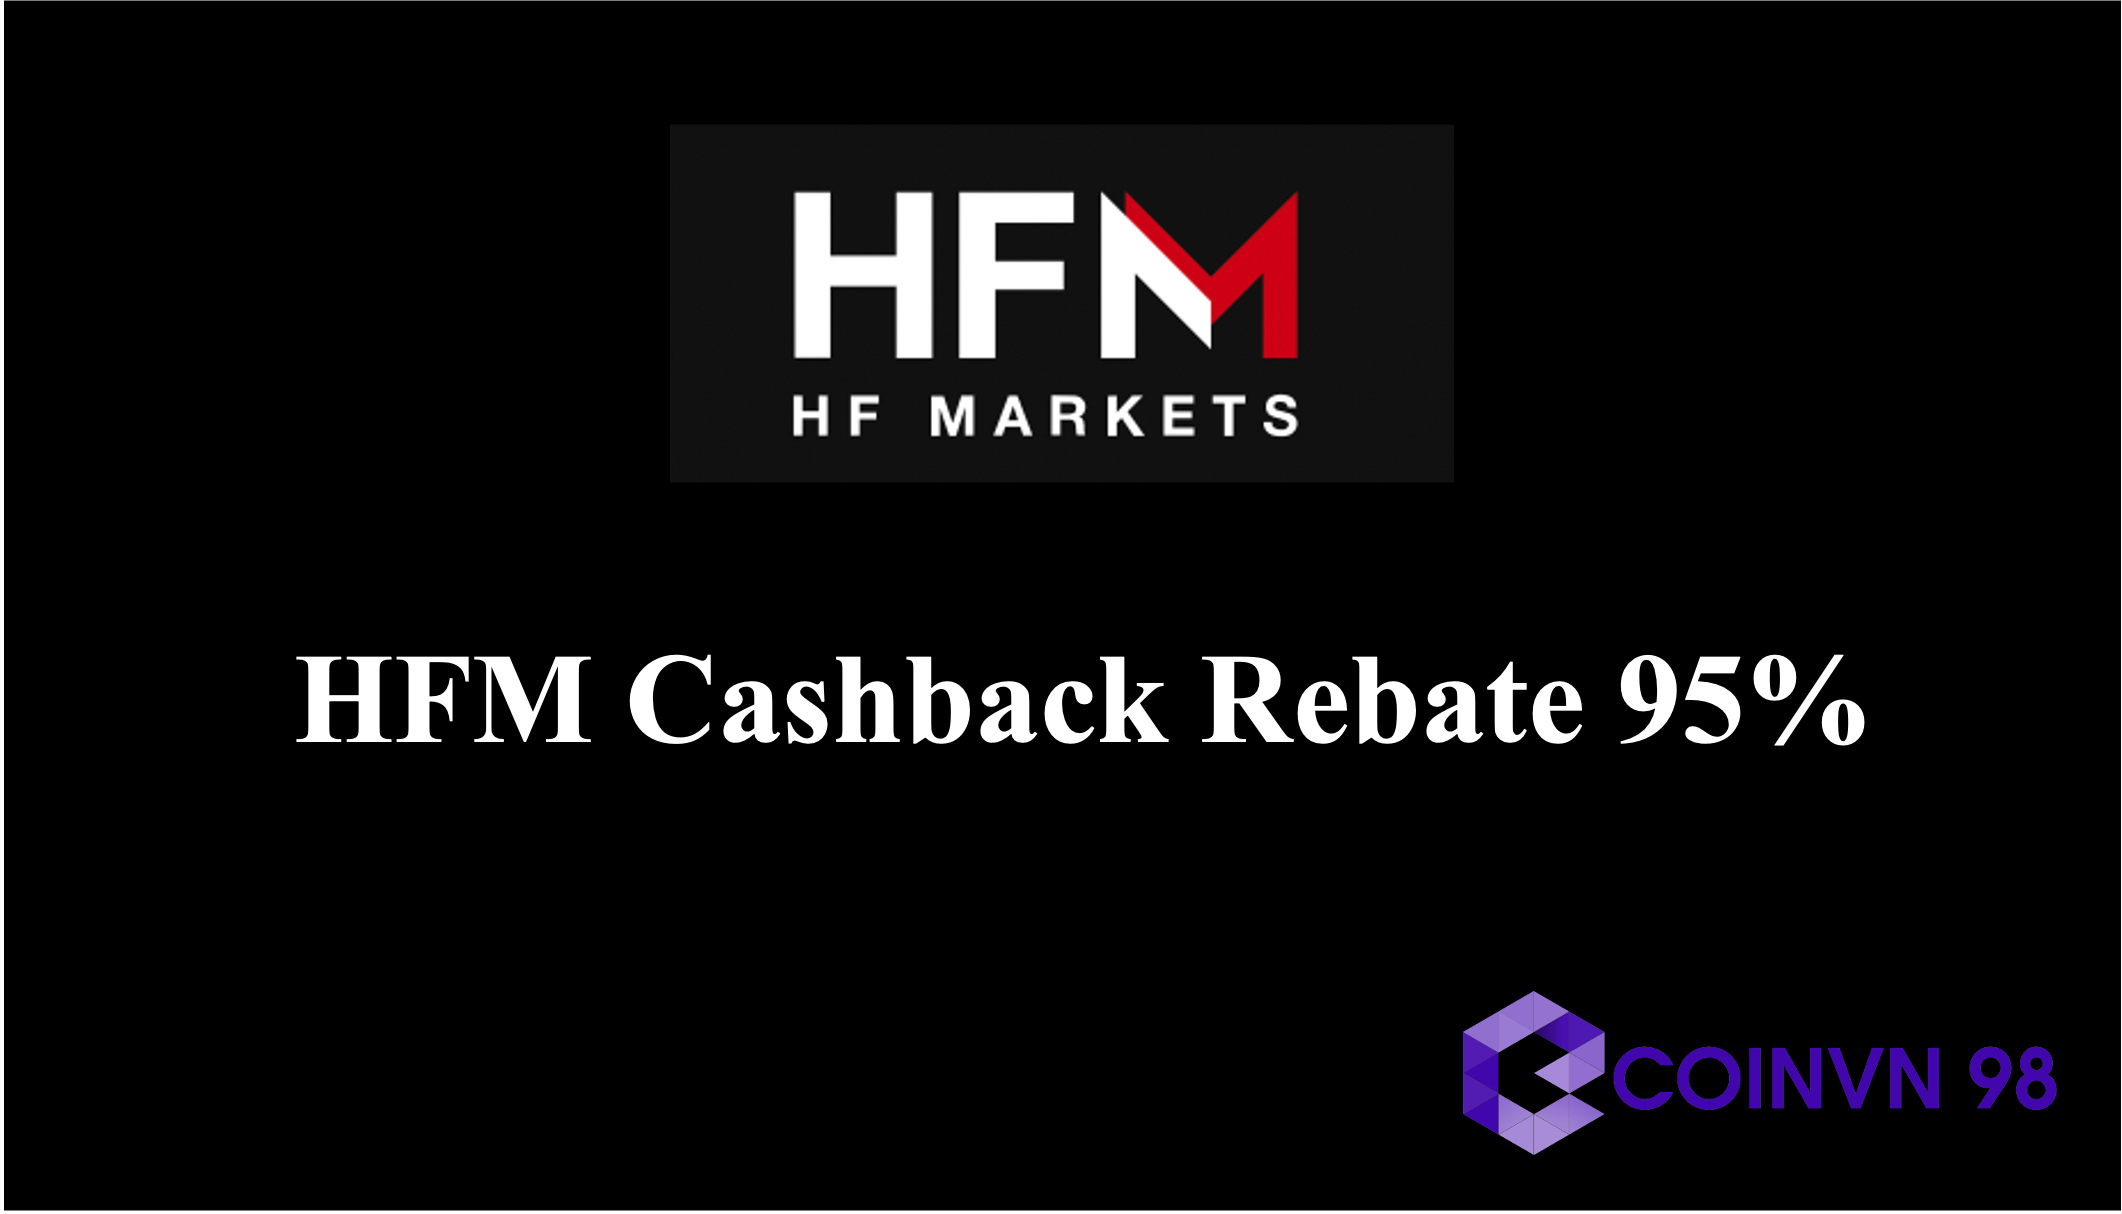 HFM Cashback Rebate